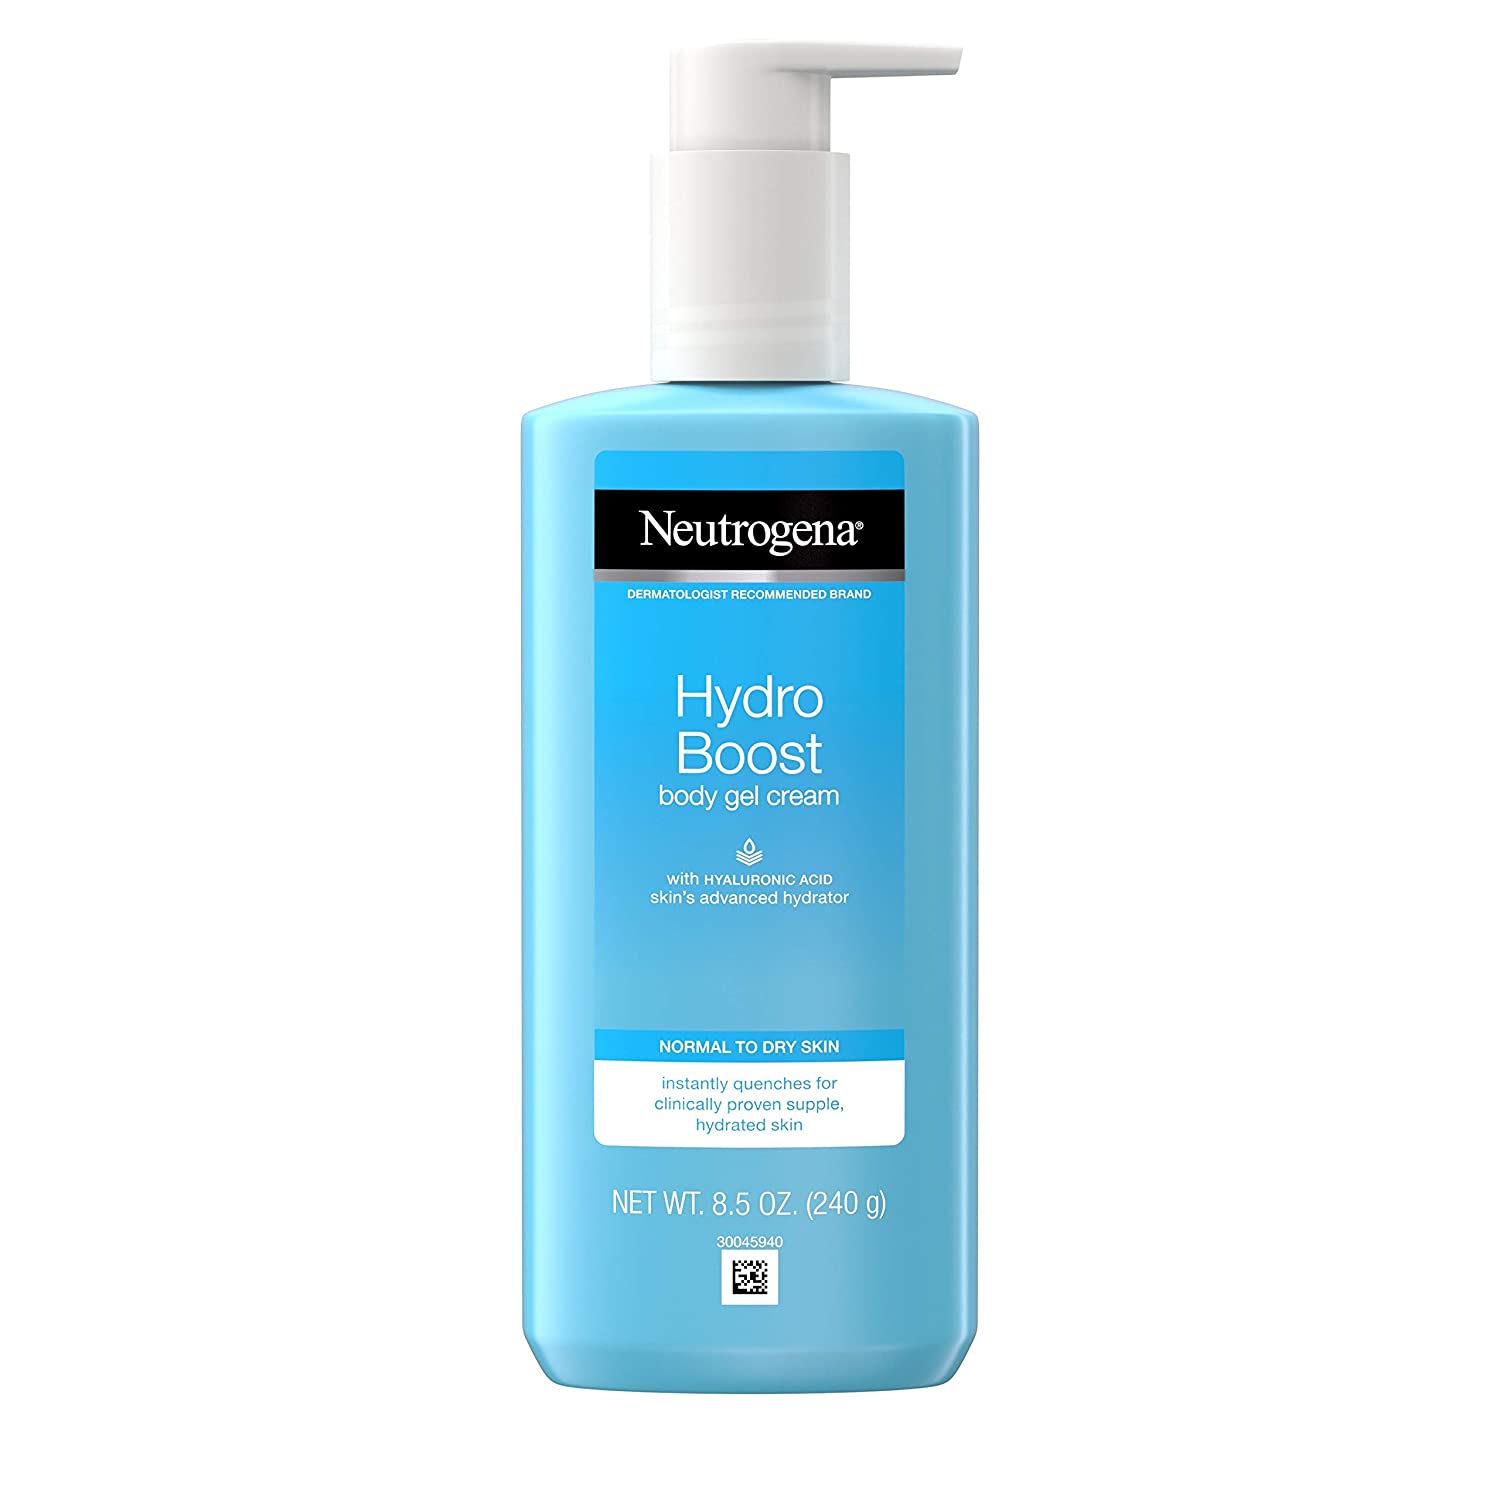 Neutrogena Hydro Boost Hydrating Body Gel Cream